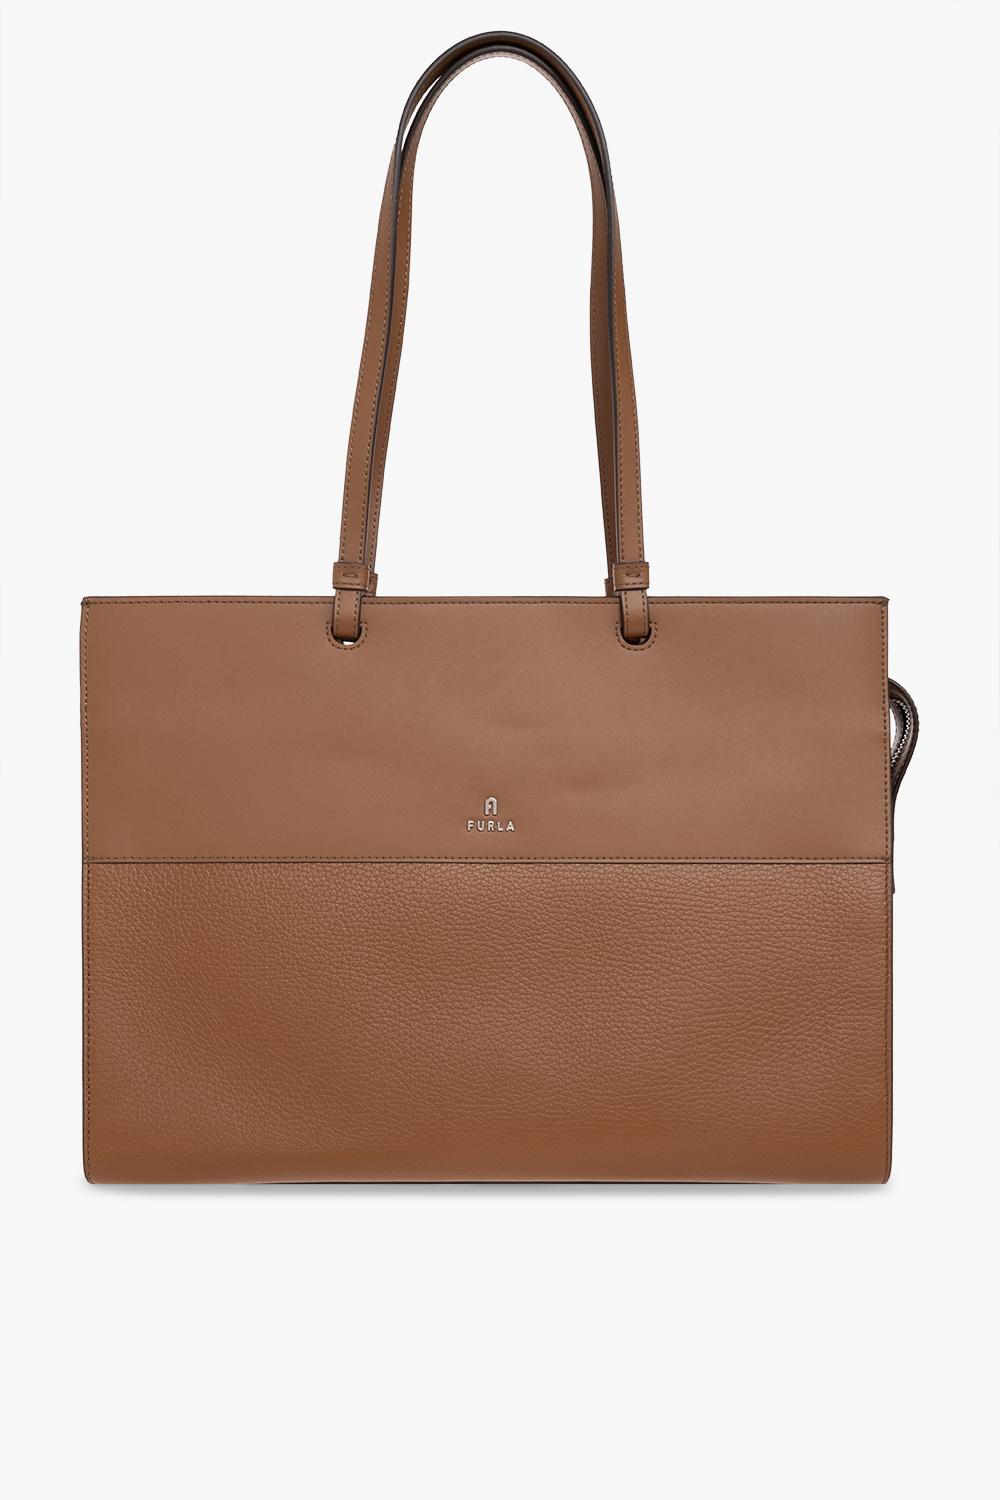 Furla ‘Varsity Style Large’ shoulder 14.5L bag